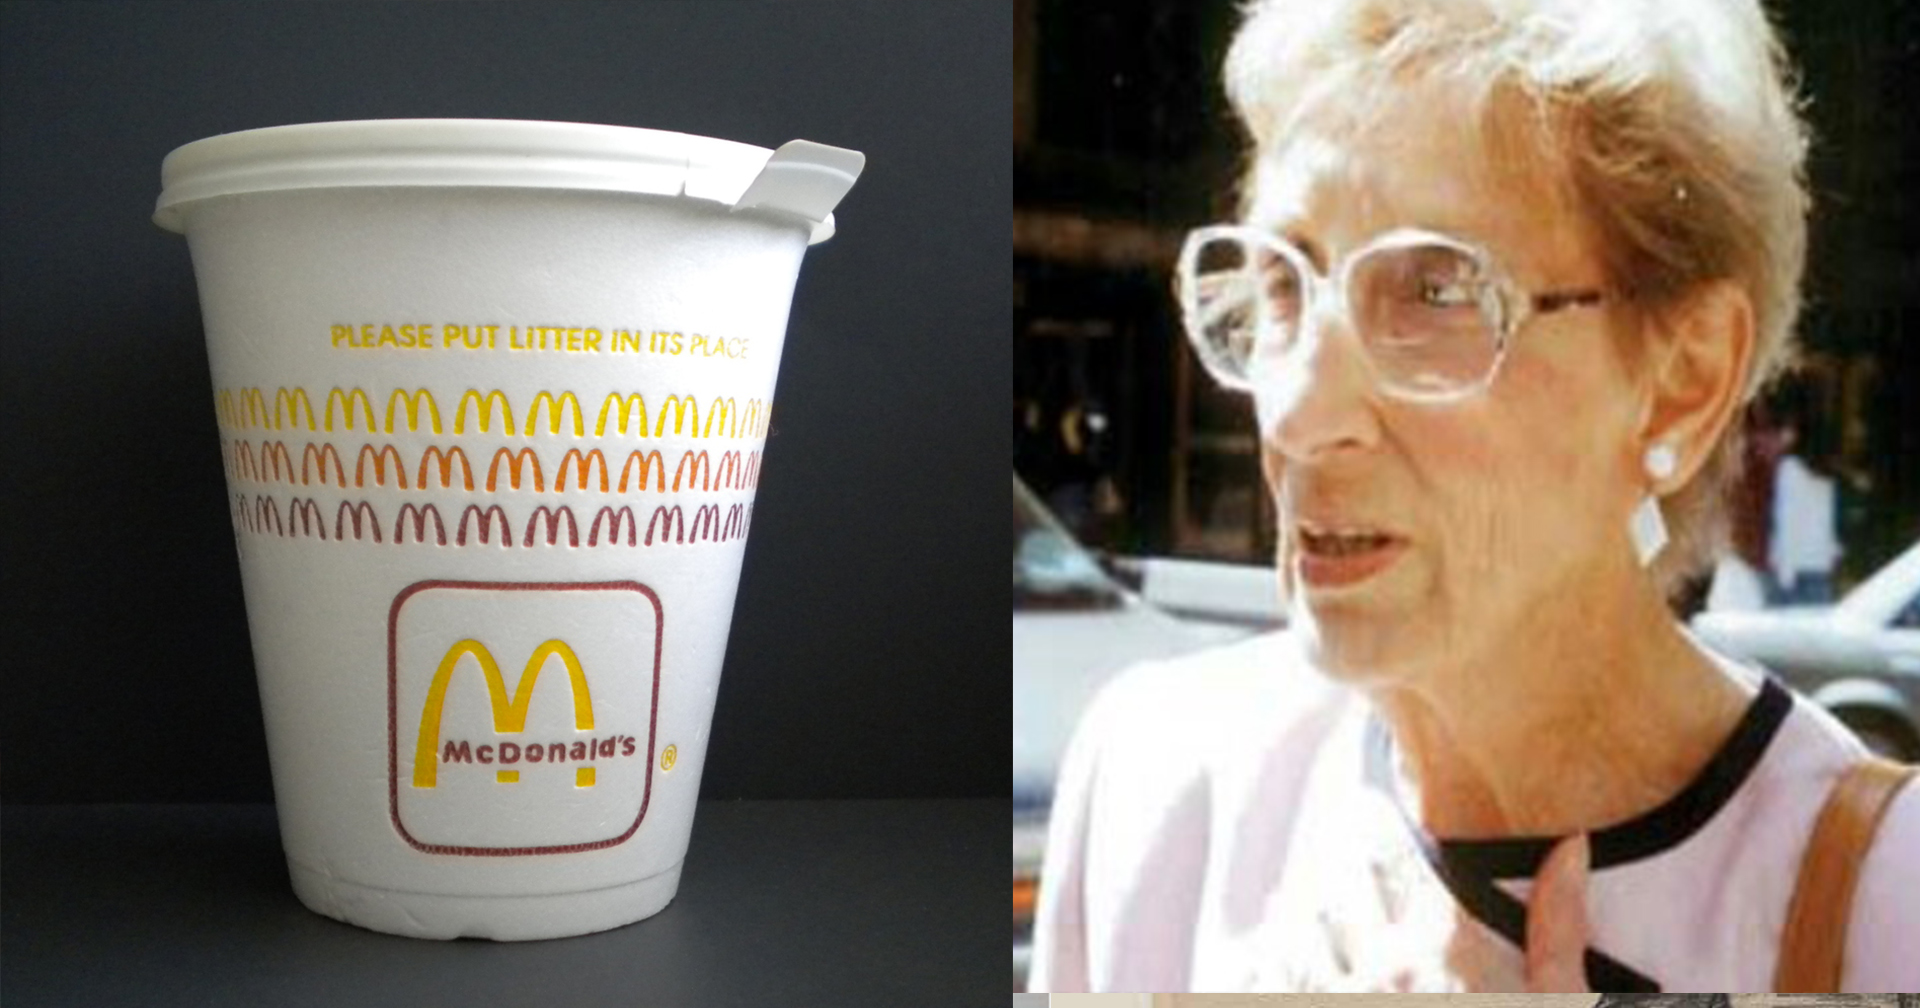 ยายวัย 79 ทำกาแฟหกใส่ขา ฟ้องแมคโดนัลด์ เหตุเสิร์ฟน้ำร้อนเกินไป สุดท้ายได้เงินไป 96 ล้าน